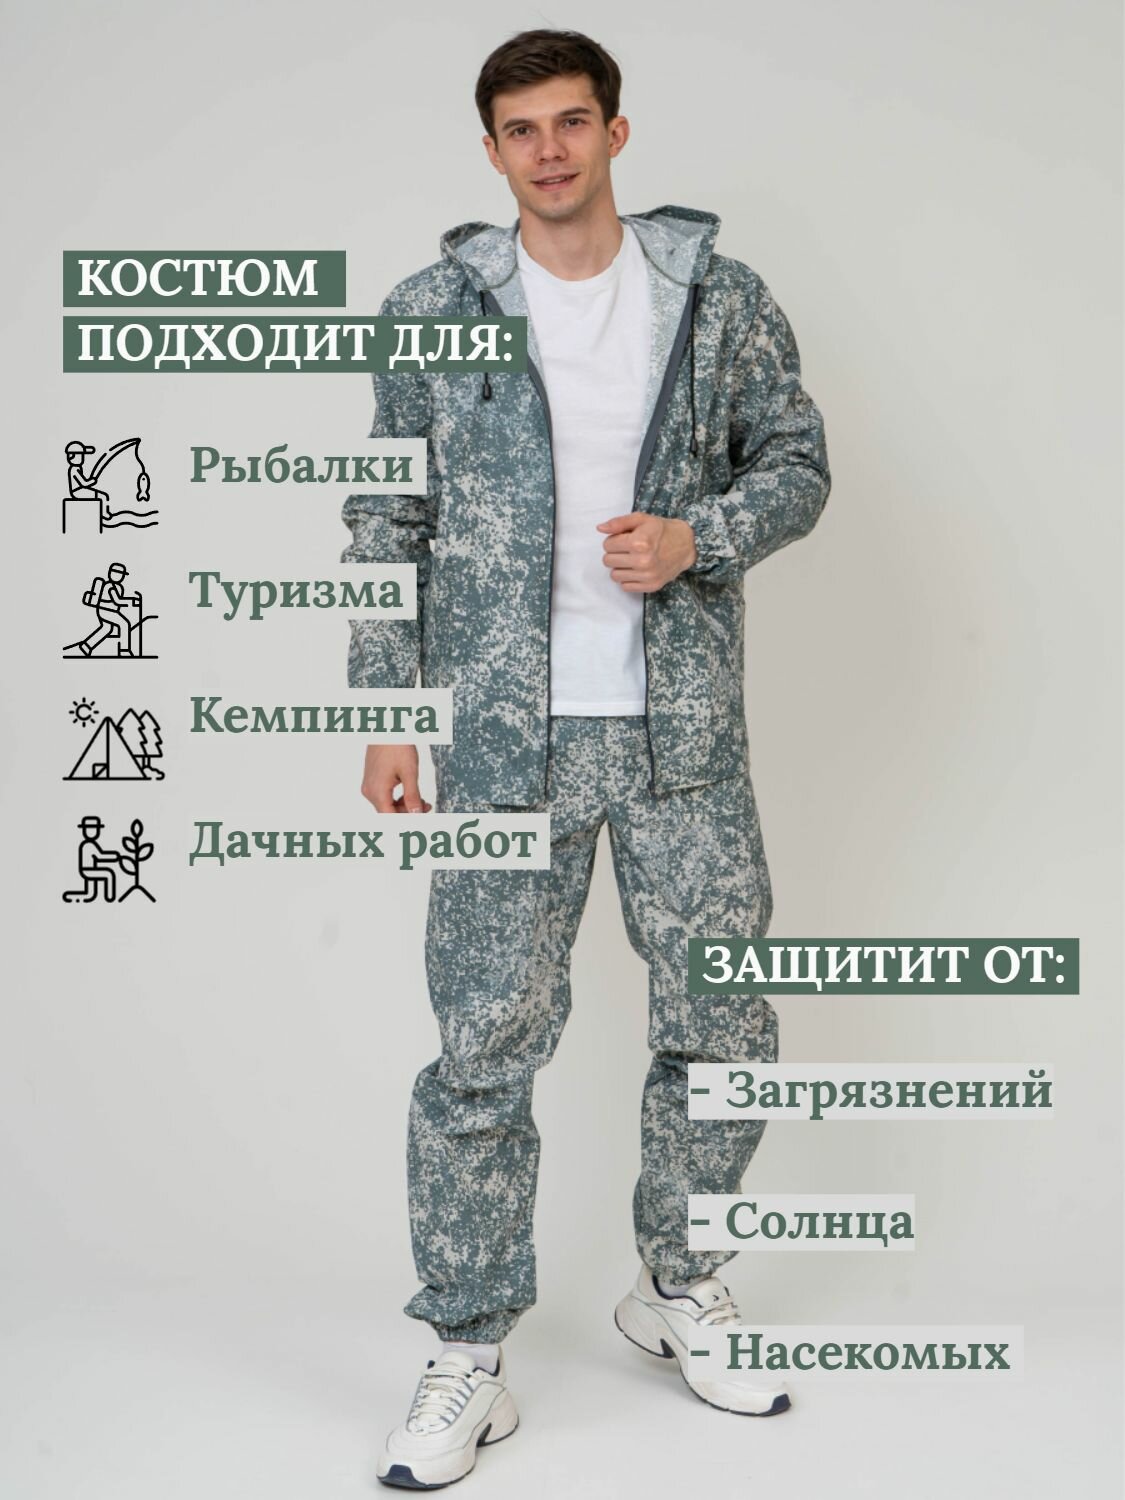 Костюм камуфлированный для рыбалки и активного отдыха ПромДизайн (куртка+брюки), 100% хлопок, 52/170RU